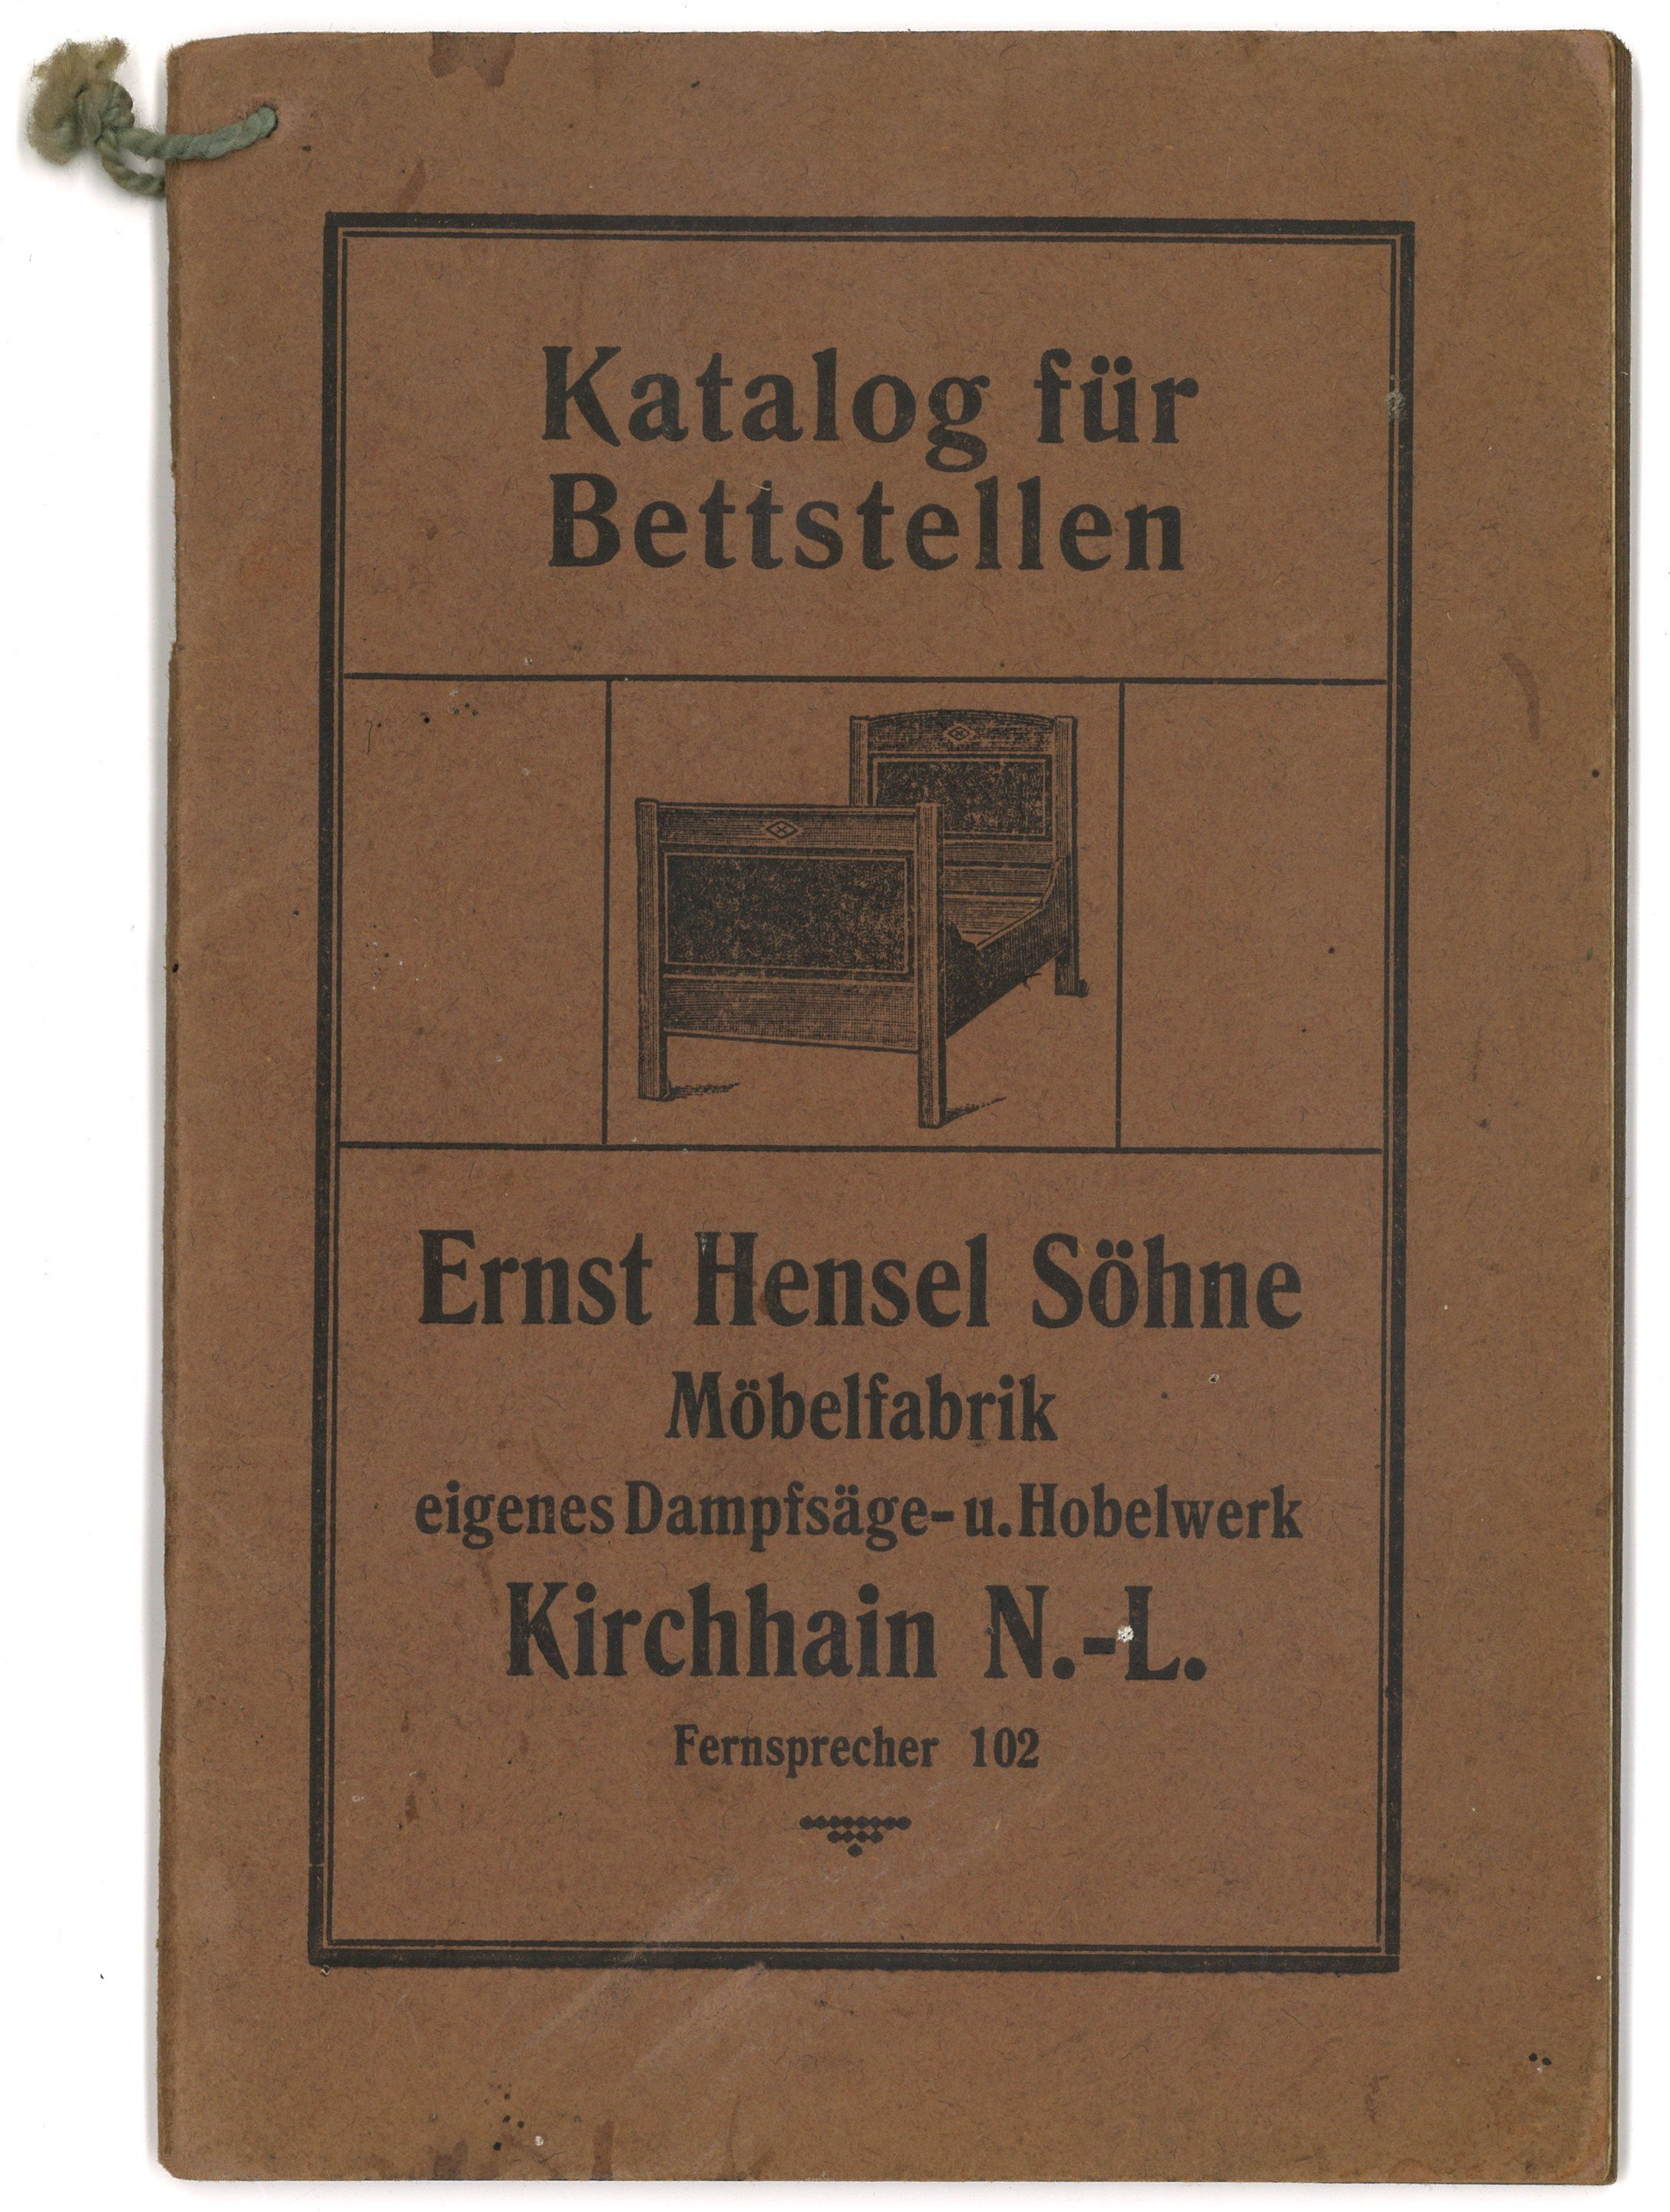 Ernst Hensel Söhne, Möbelfabrik, Kirchhain N-L.: Katalog für Bettstellen (Landesgeschichtliche Vereinigung für die Mark Brandenburg e.V., Archiv CC BY)